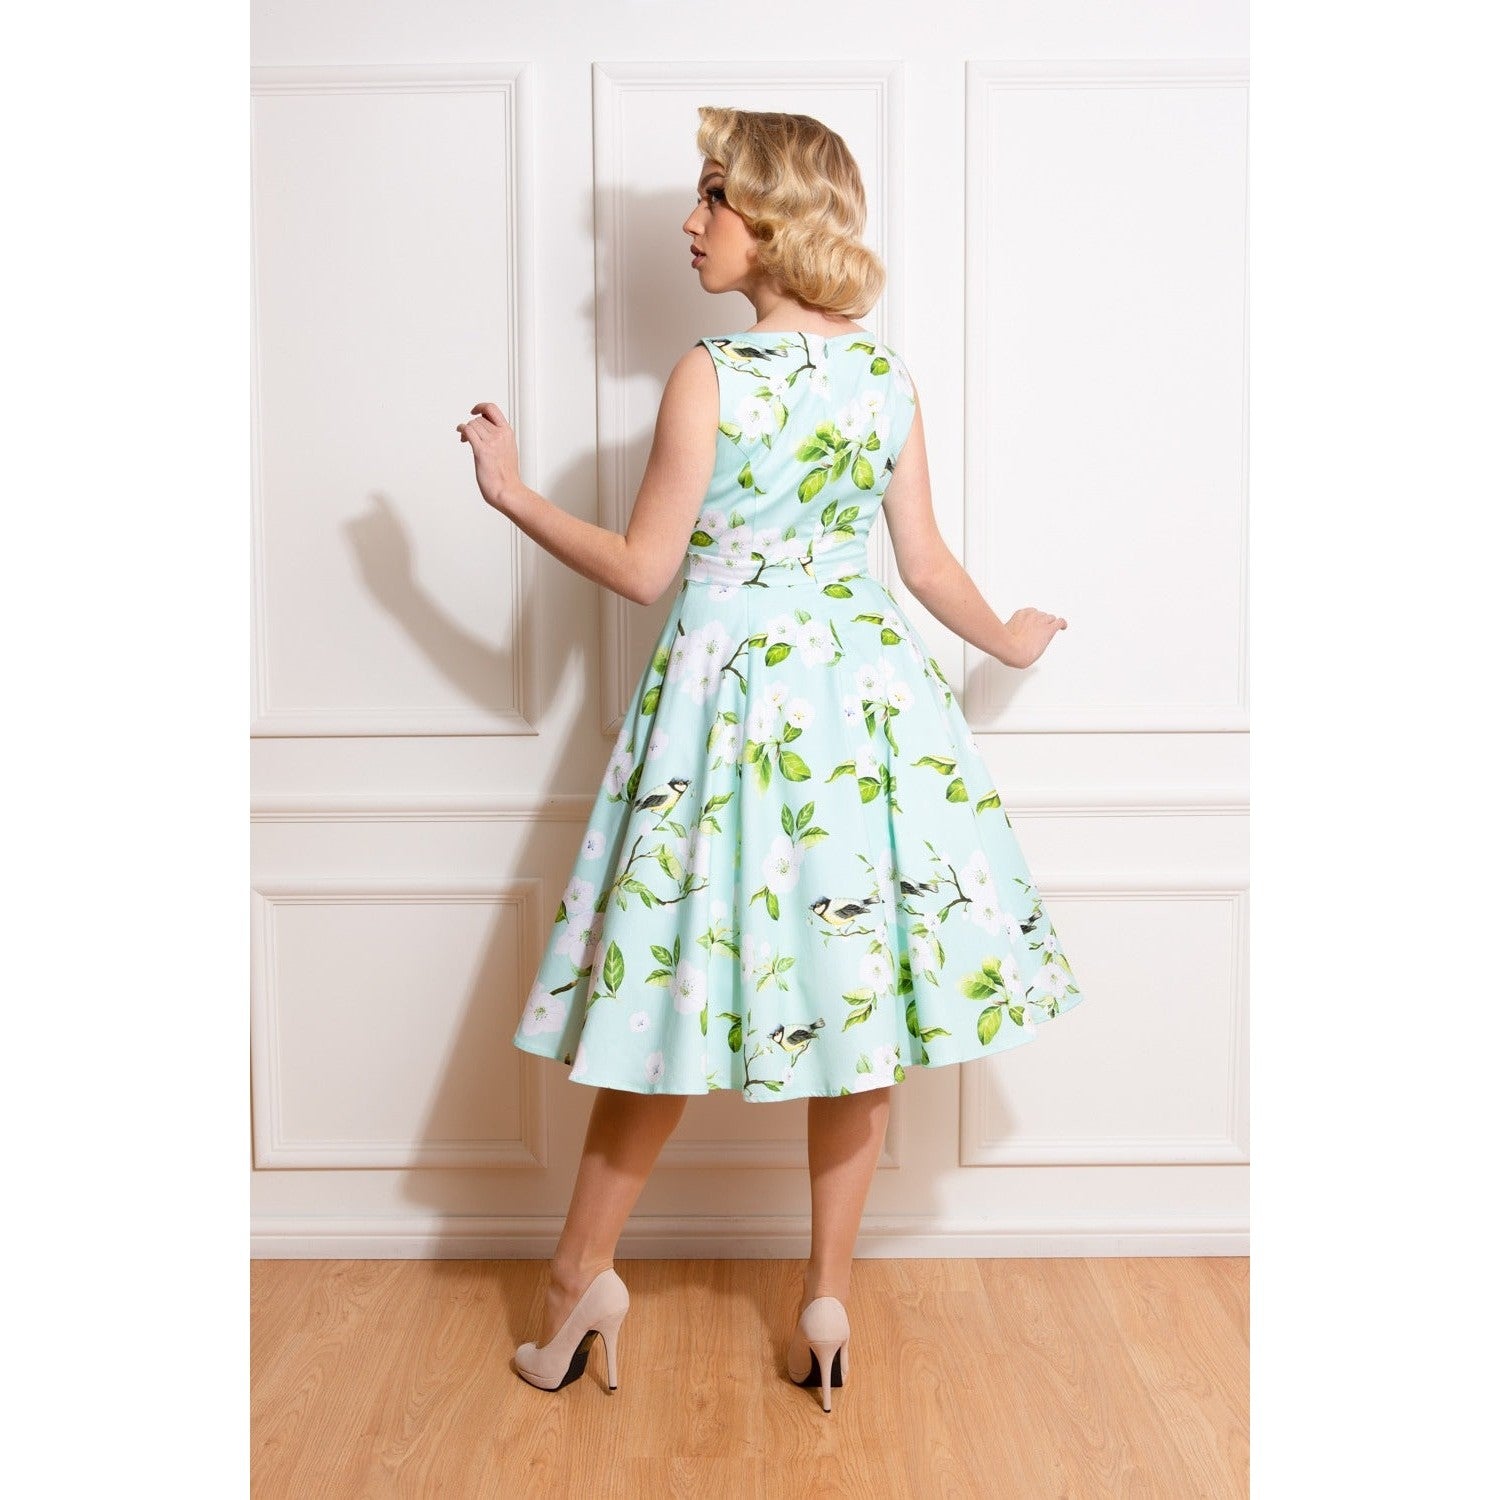 Light Mint Green Floral Print Sleeveless 50s Summer Swing Dress